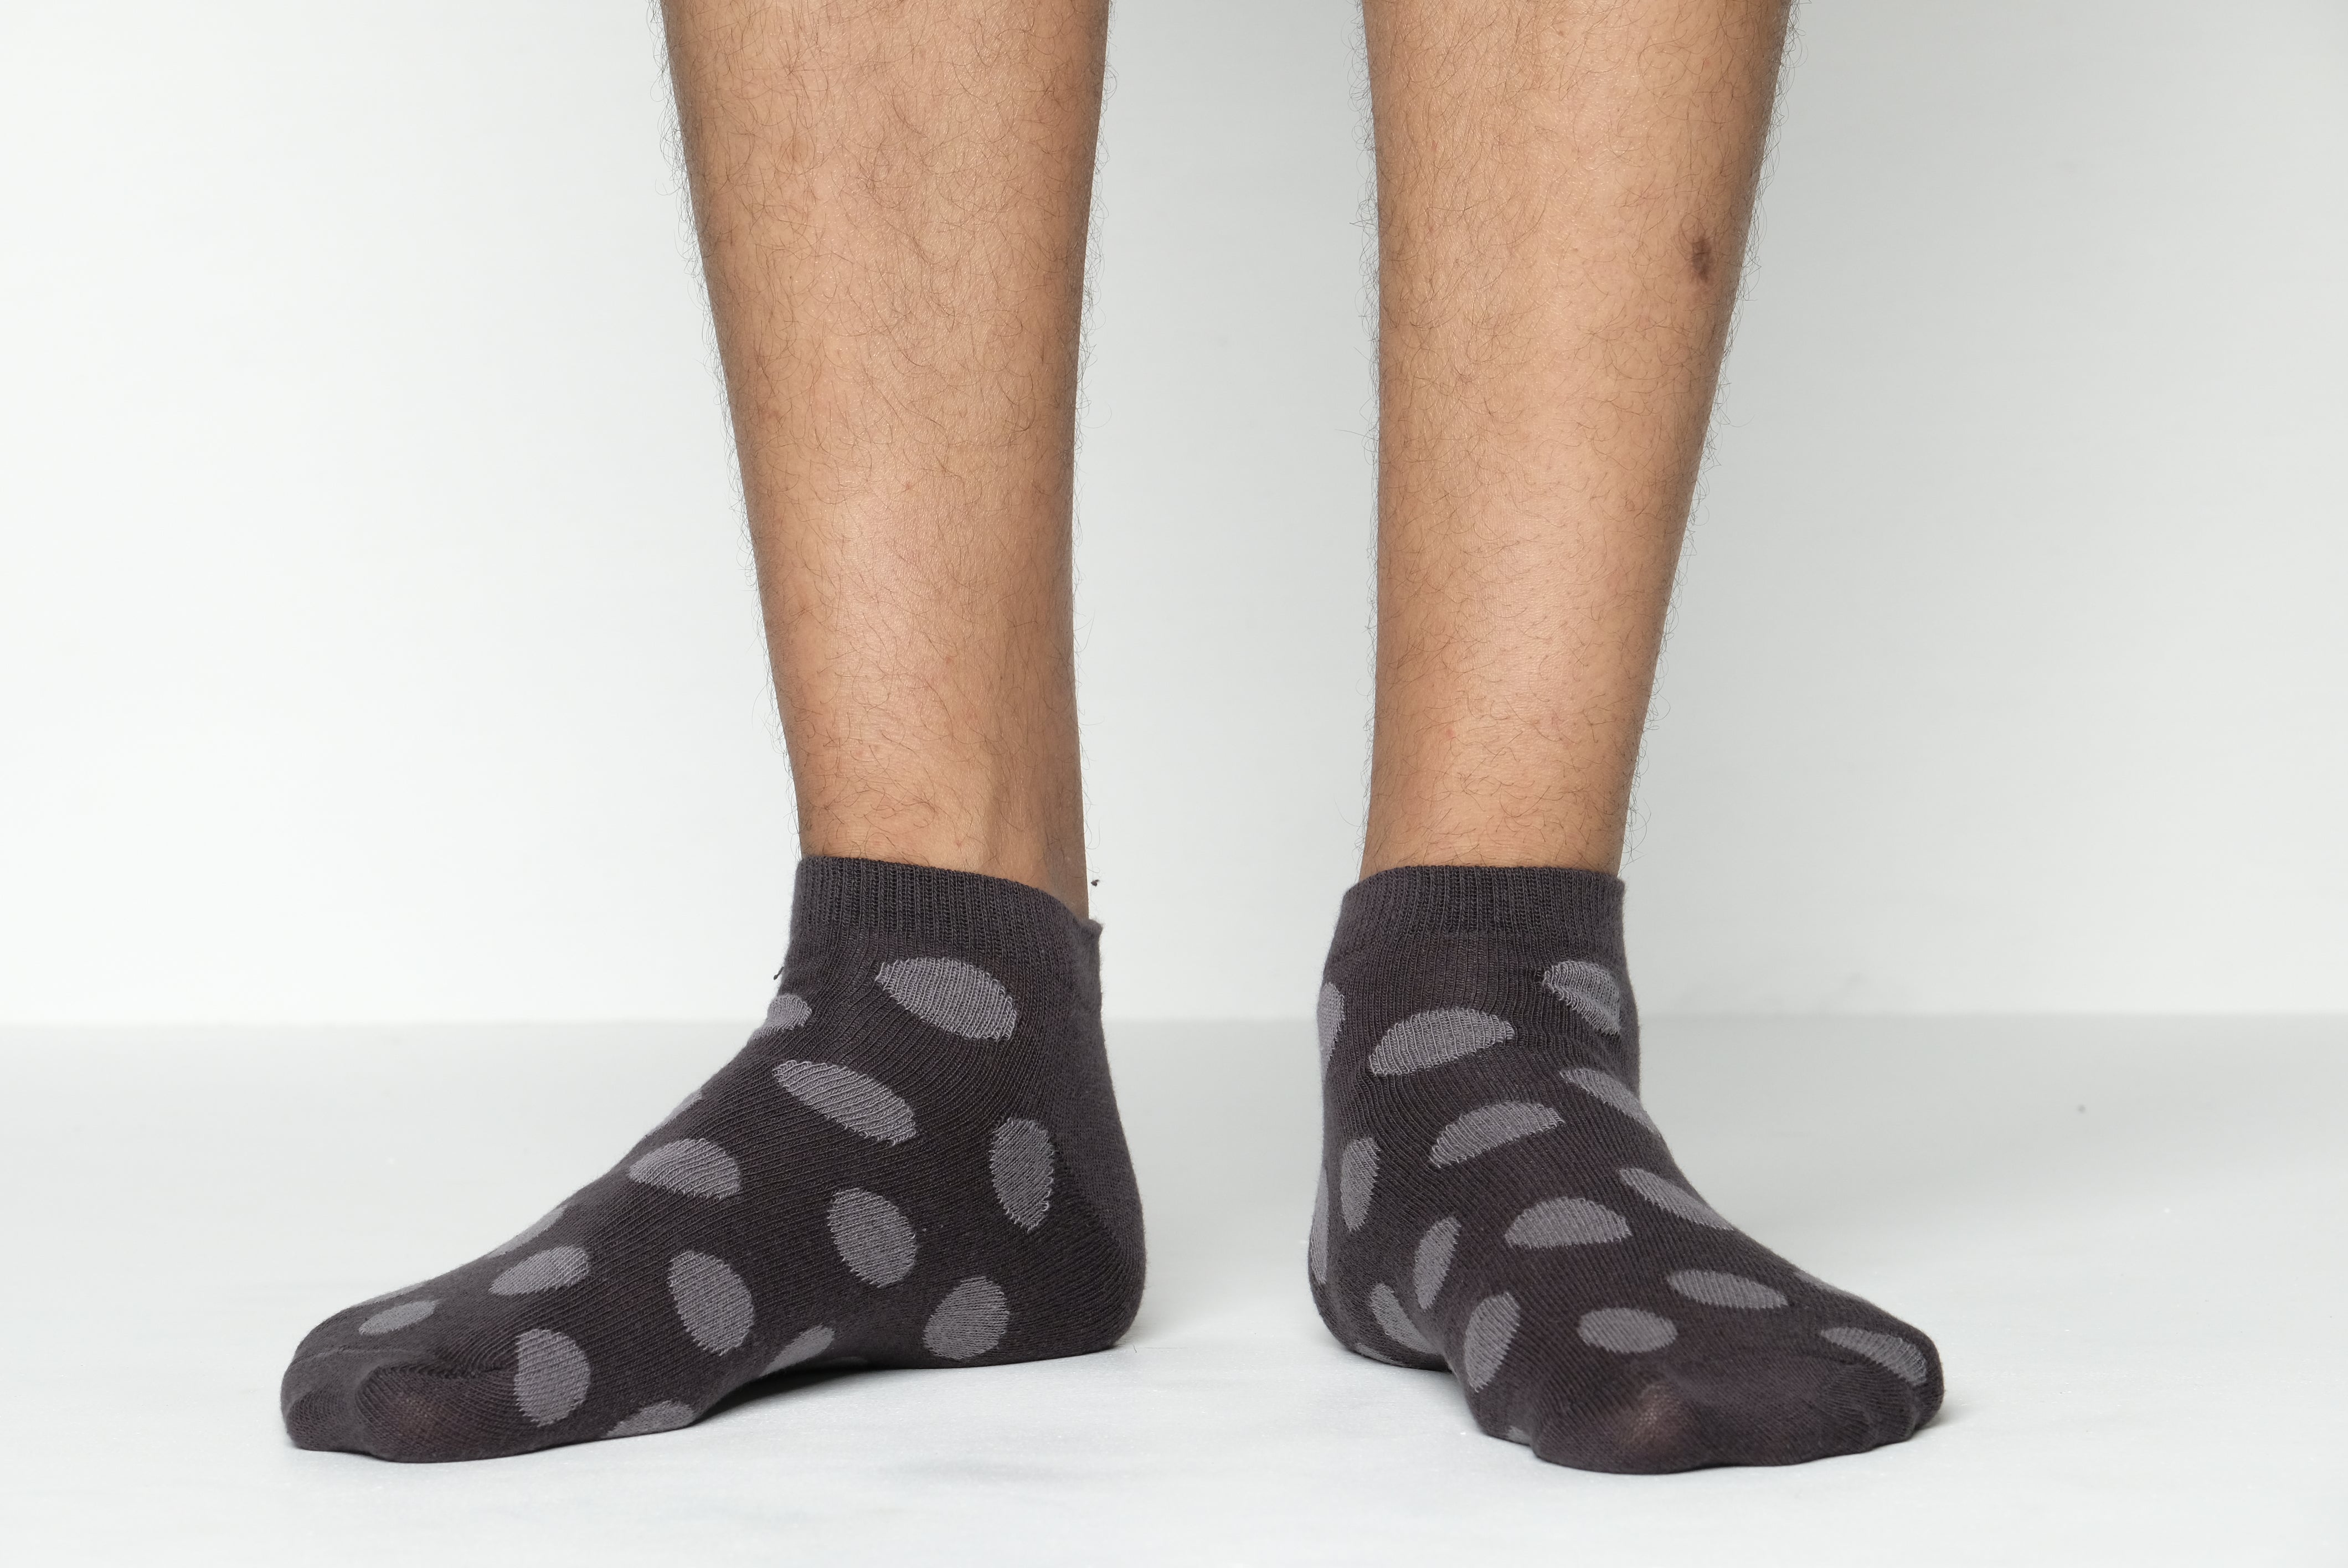 Cat Step Ankle socks for Men